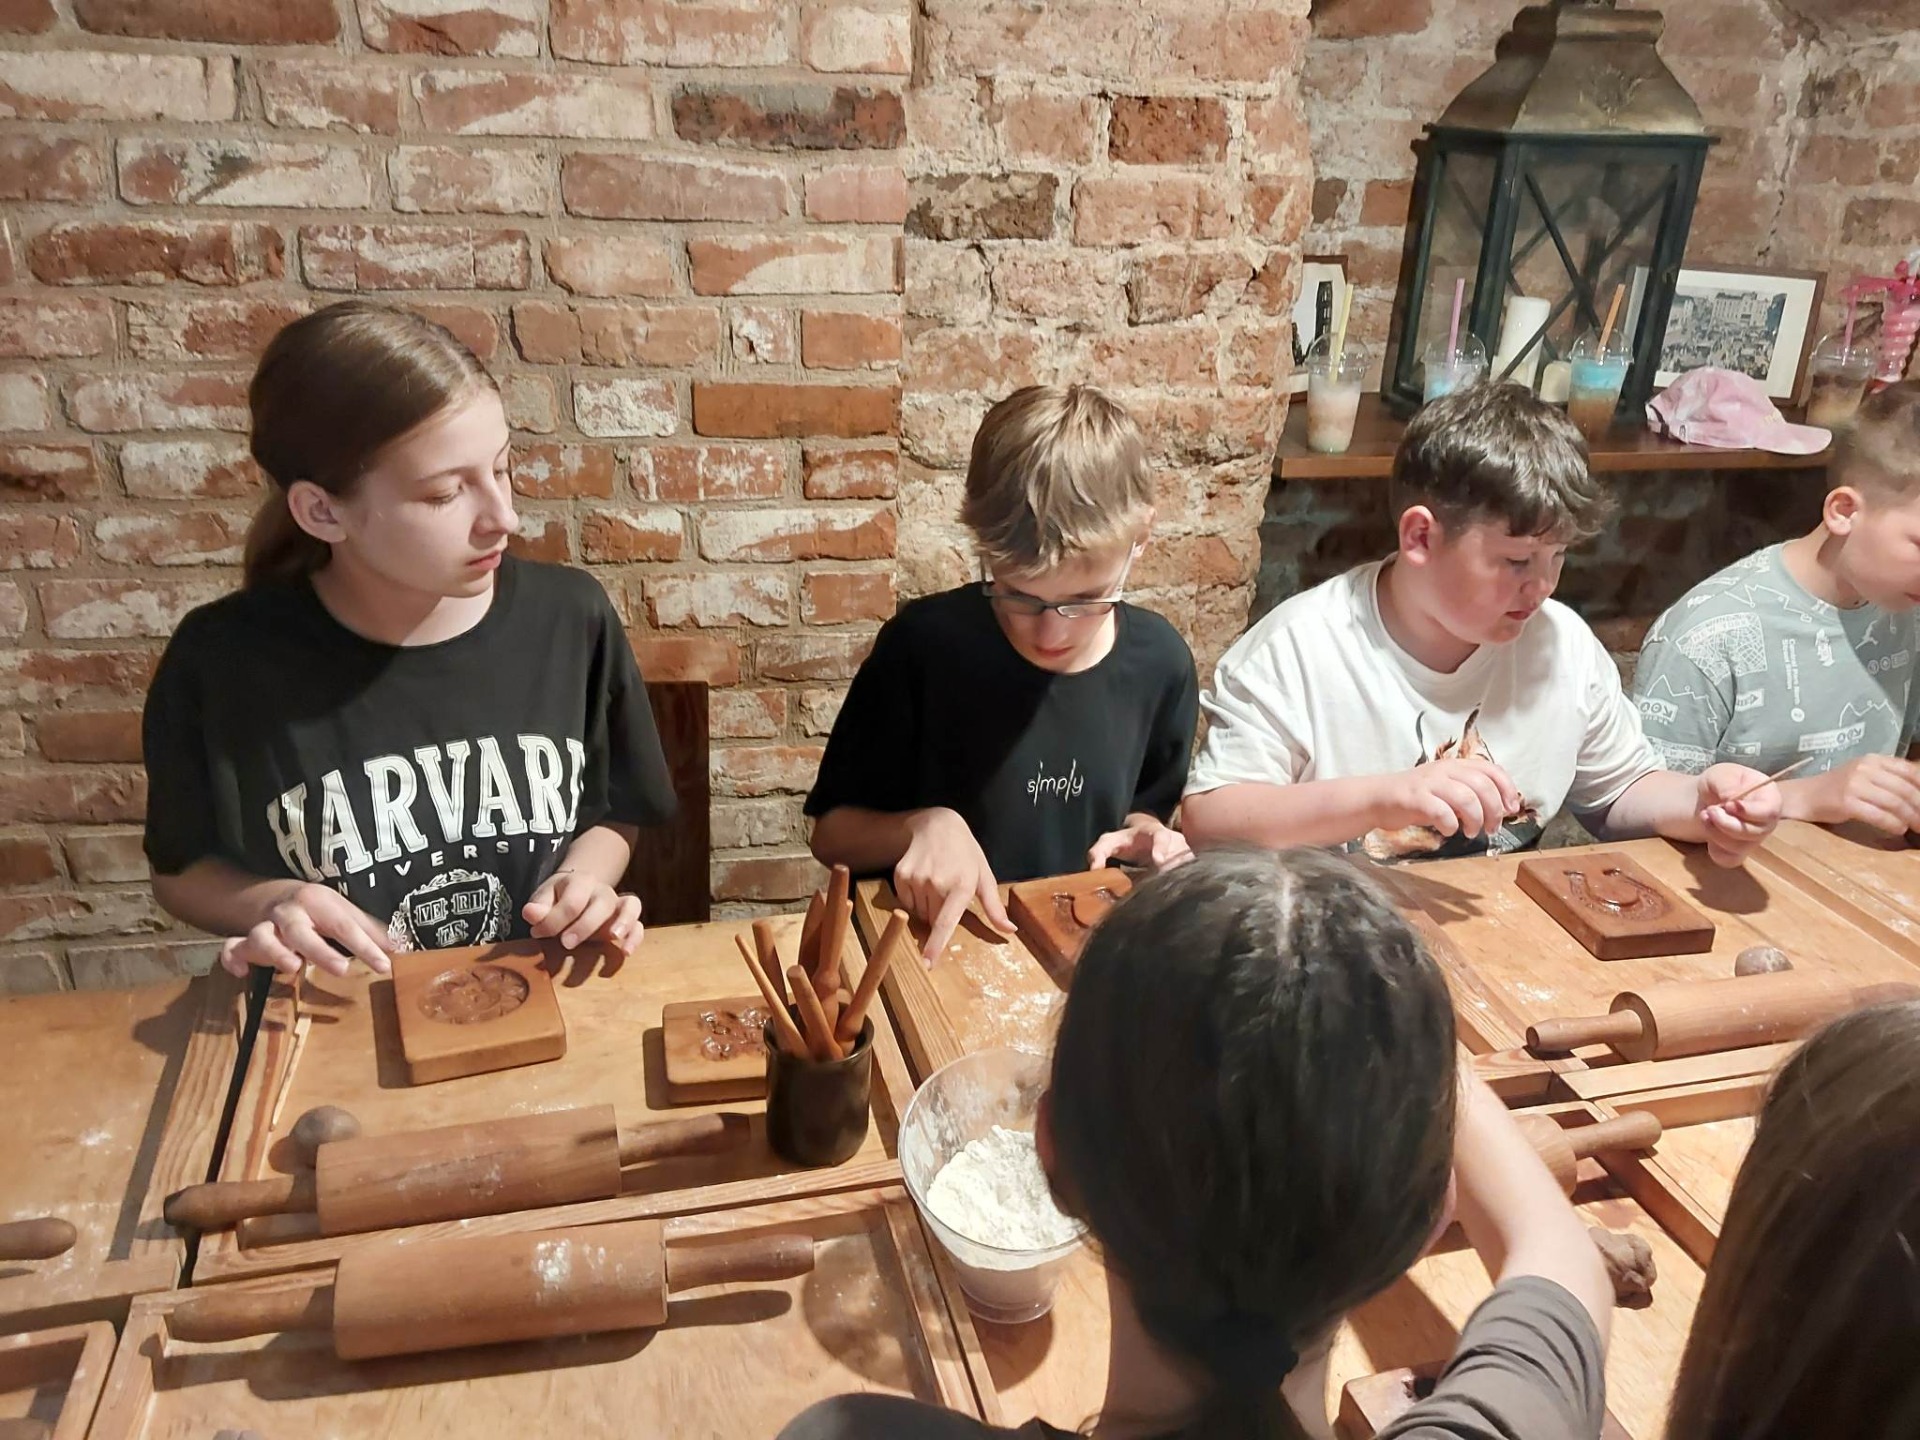 Grupa uczniów siedzi przy drewnianym stole w czasie warsztatów wyrabiani piernika